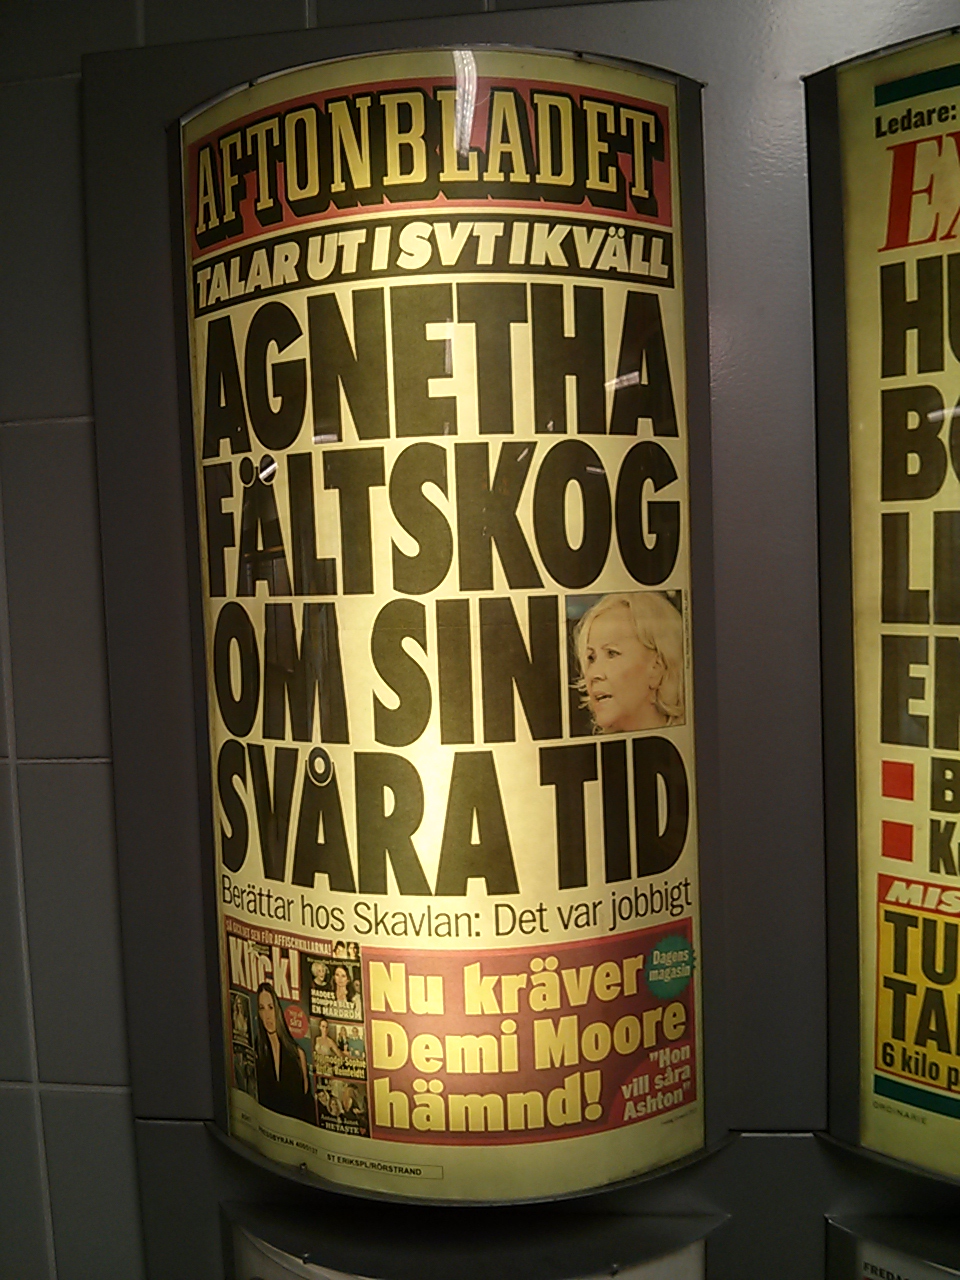 Nyheter från Stockholm